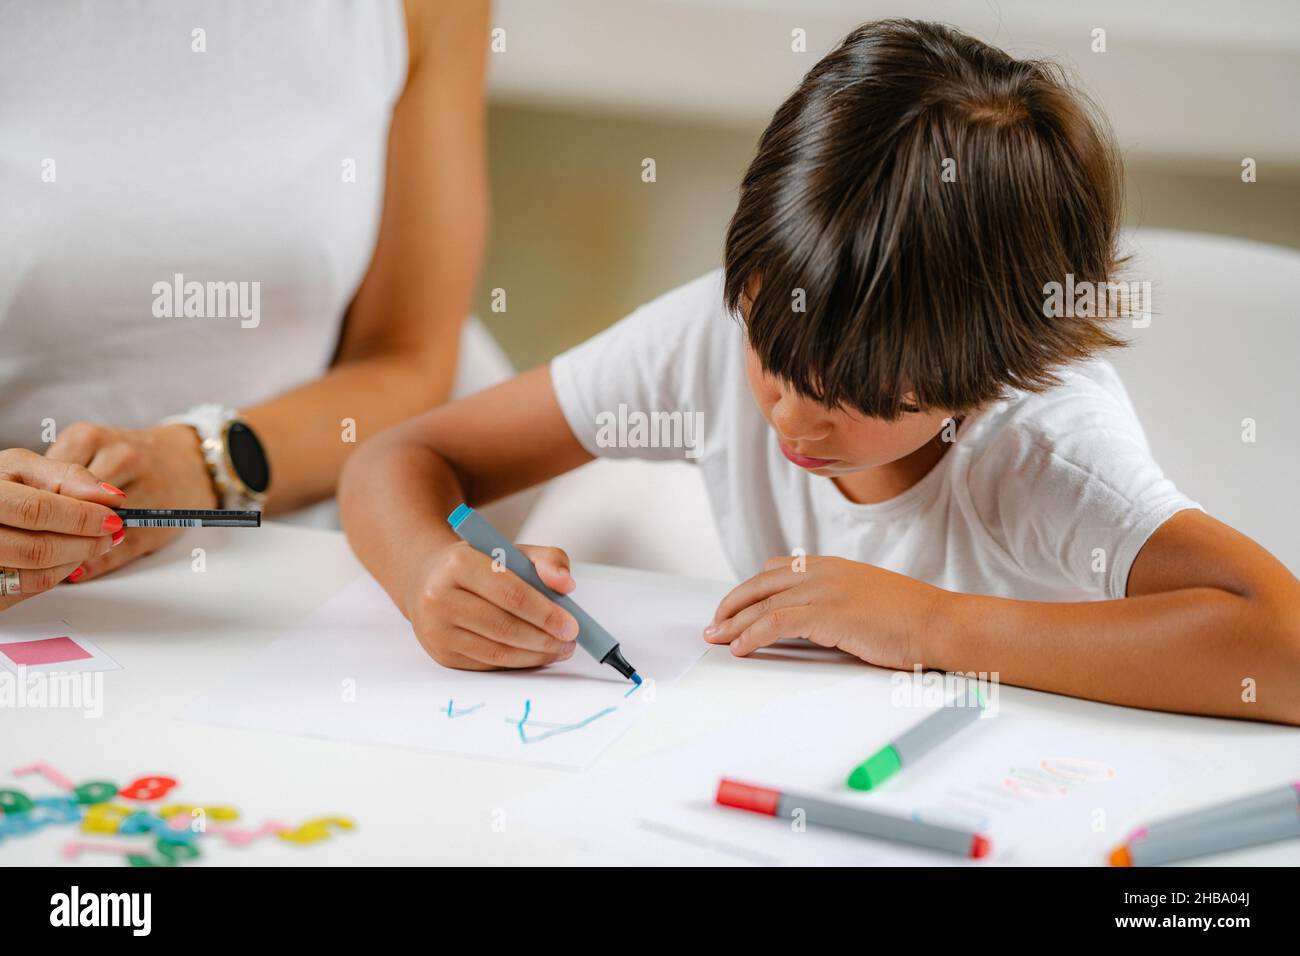 Junge, der bei einem Vorschulscreening Briefe schreibt. Stockfoto